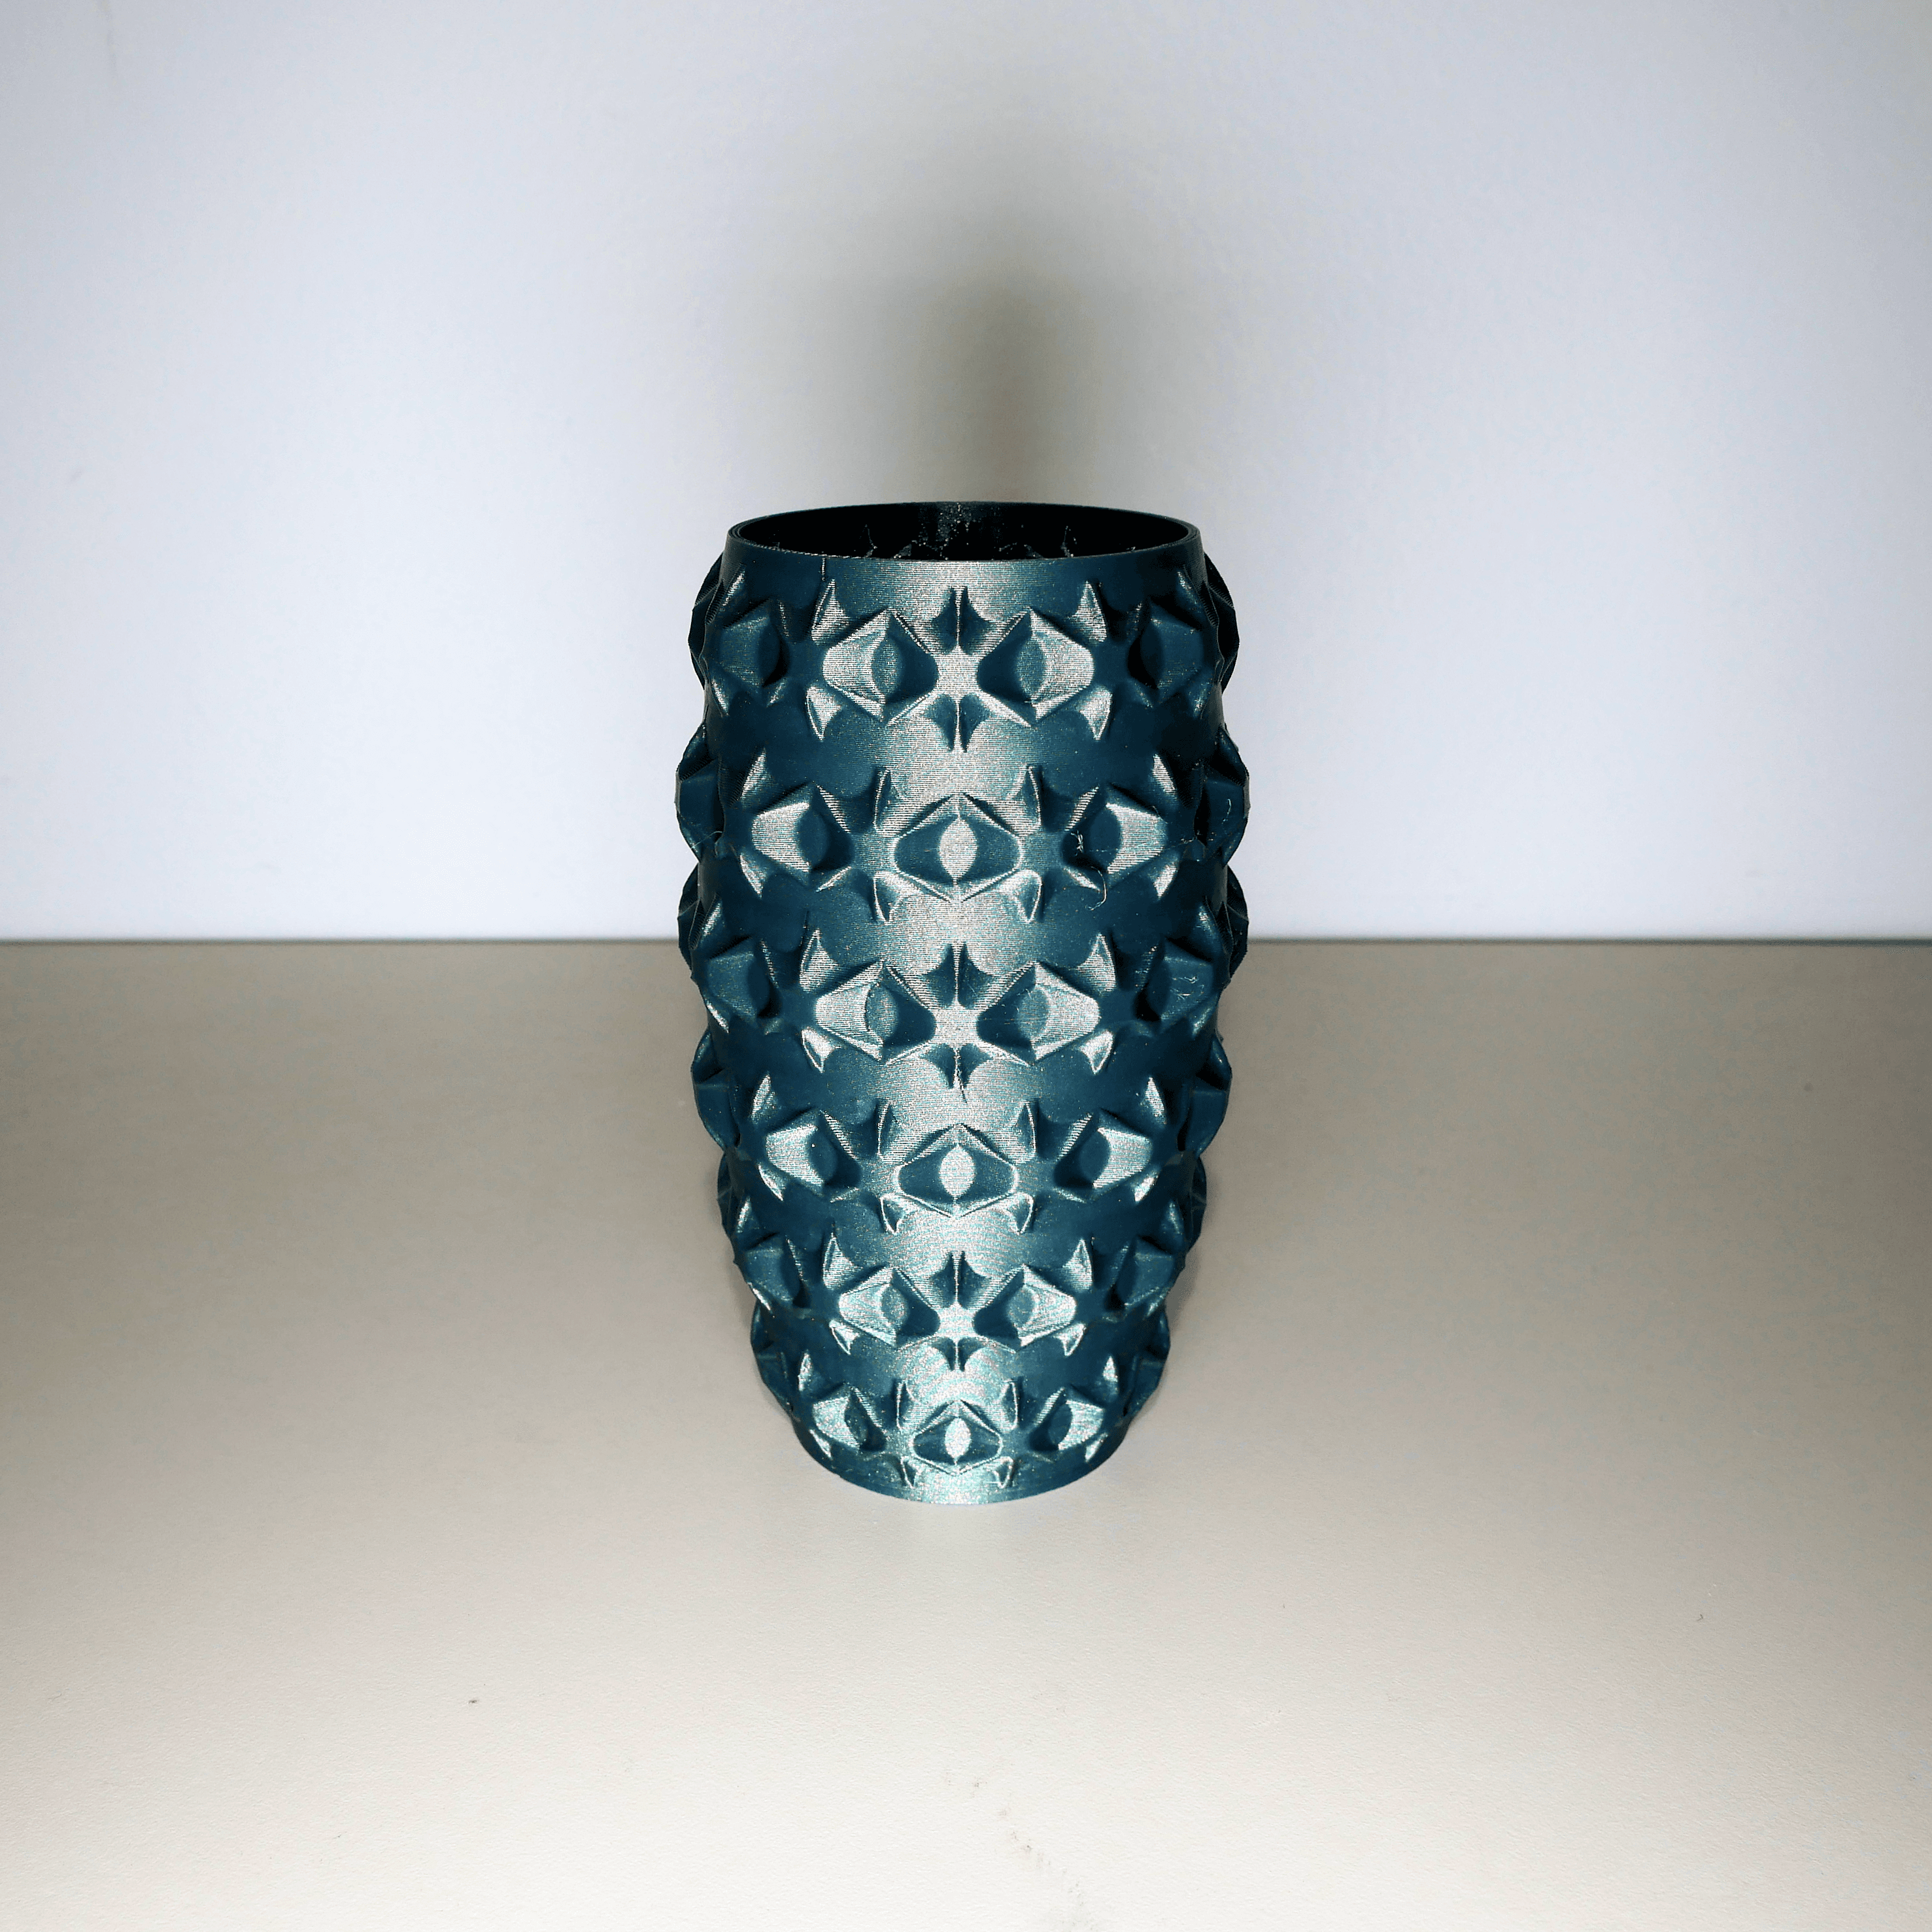 Outward Star Vase 3d model